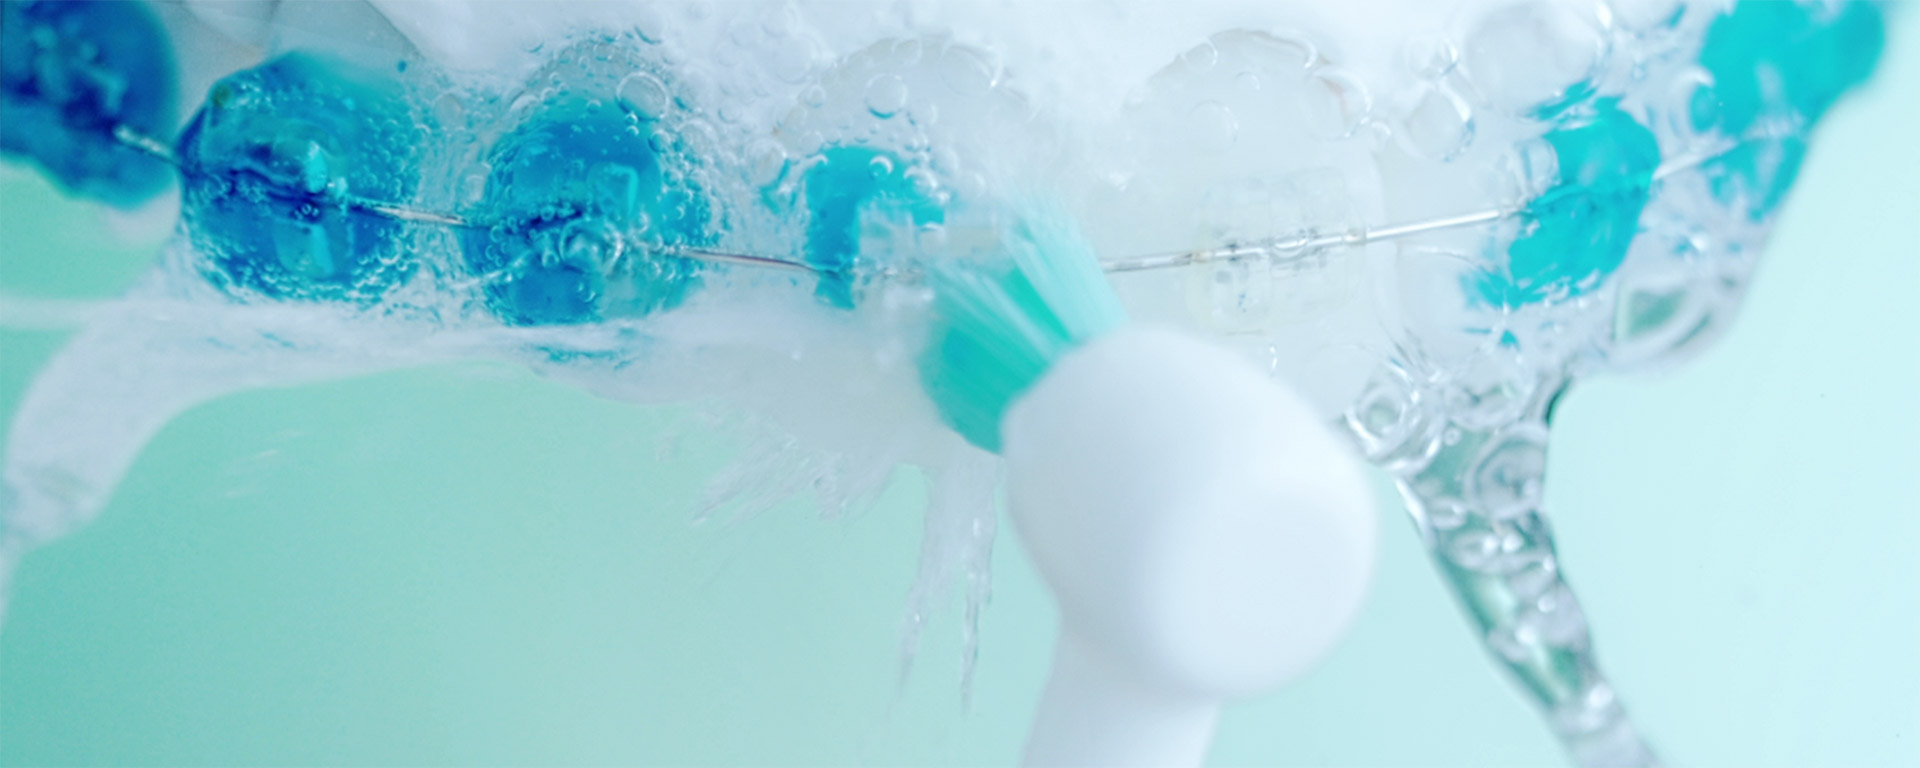 歯列矯正器具周りの汚れを磨いているイメージ